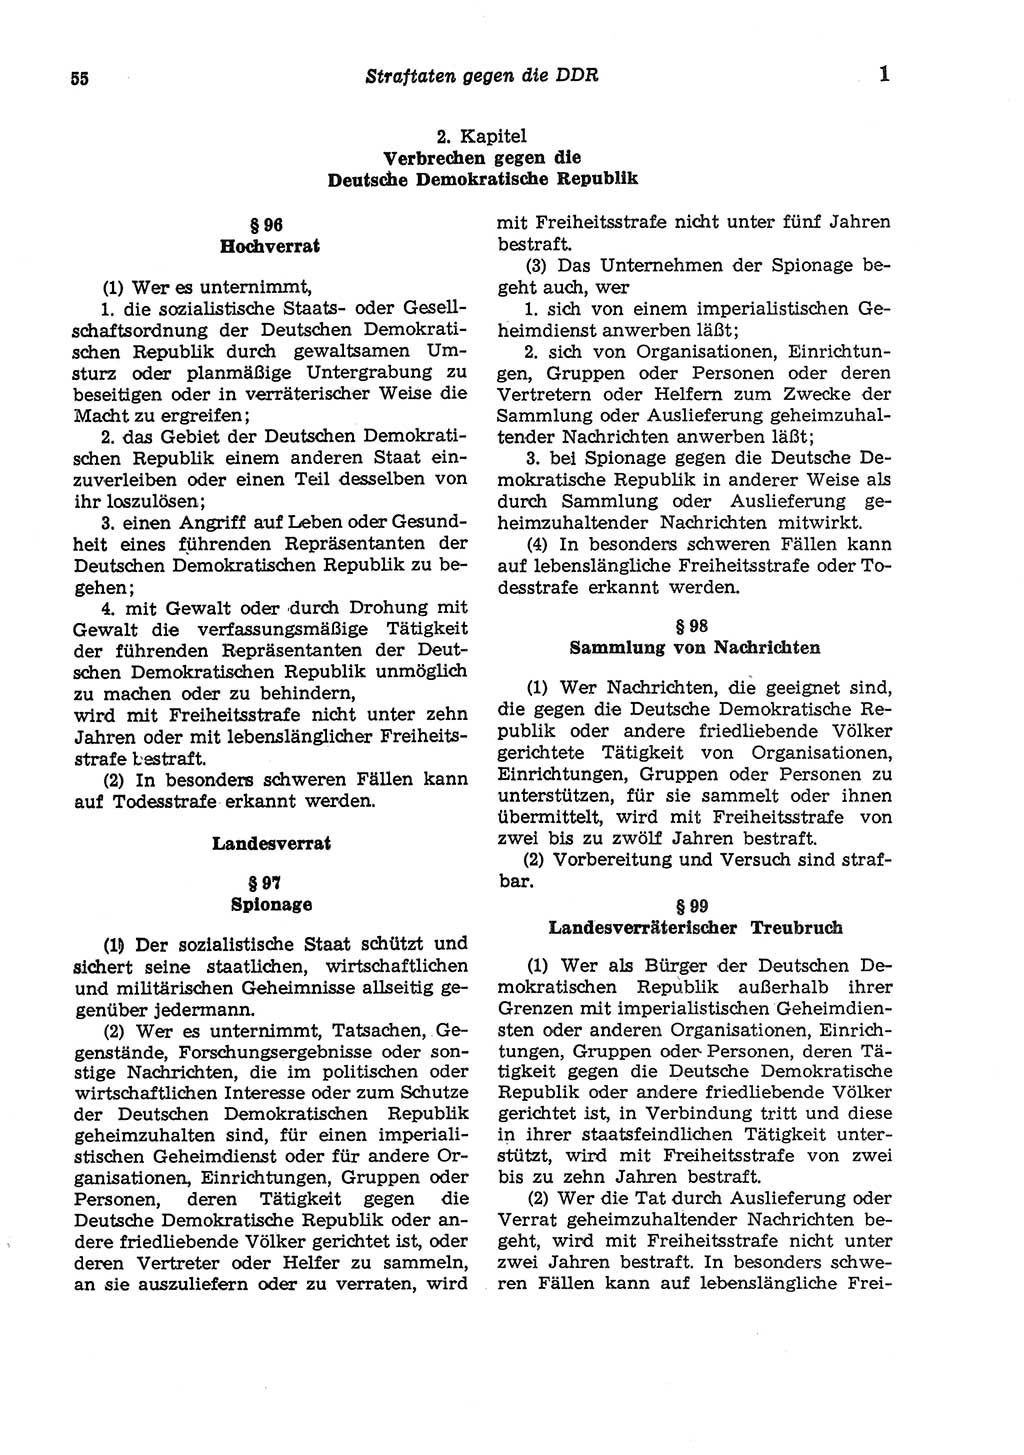 Strafgesetzbuch (StGB) der Deutschen Demokratischen Republik (DDR) und angrenzende Gesetze und Bestimmungen 1975, Seite 55 (StGB DDR Ges. Best. 1975, S. 55)